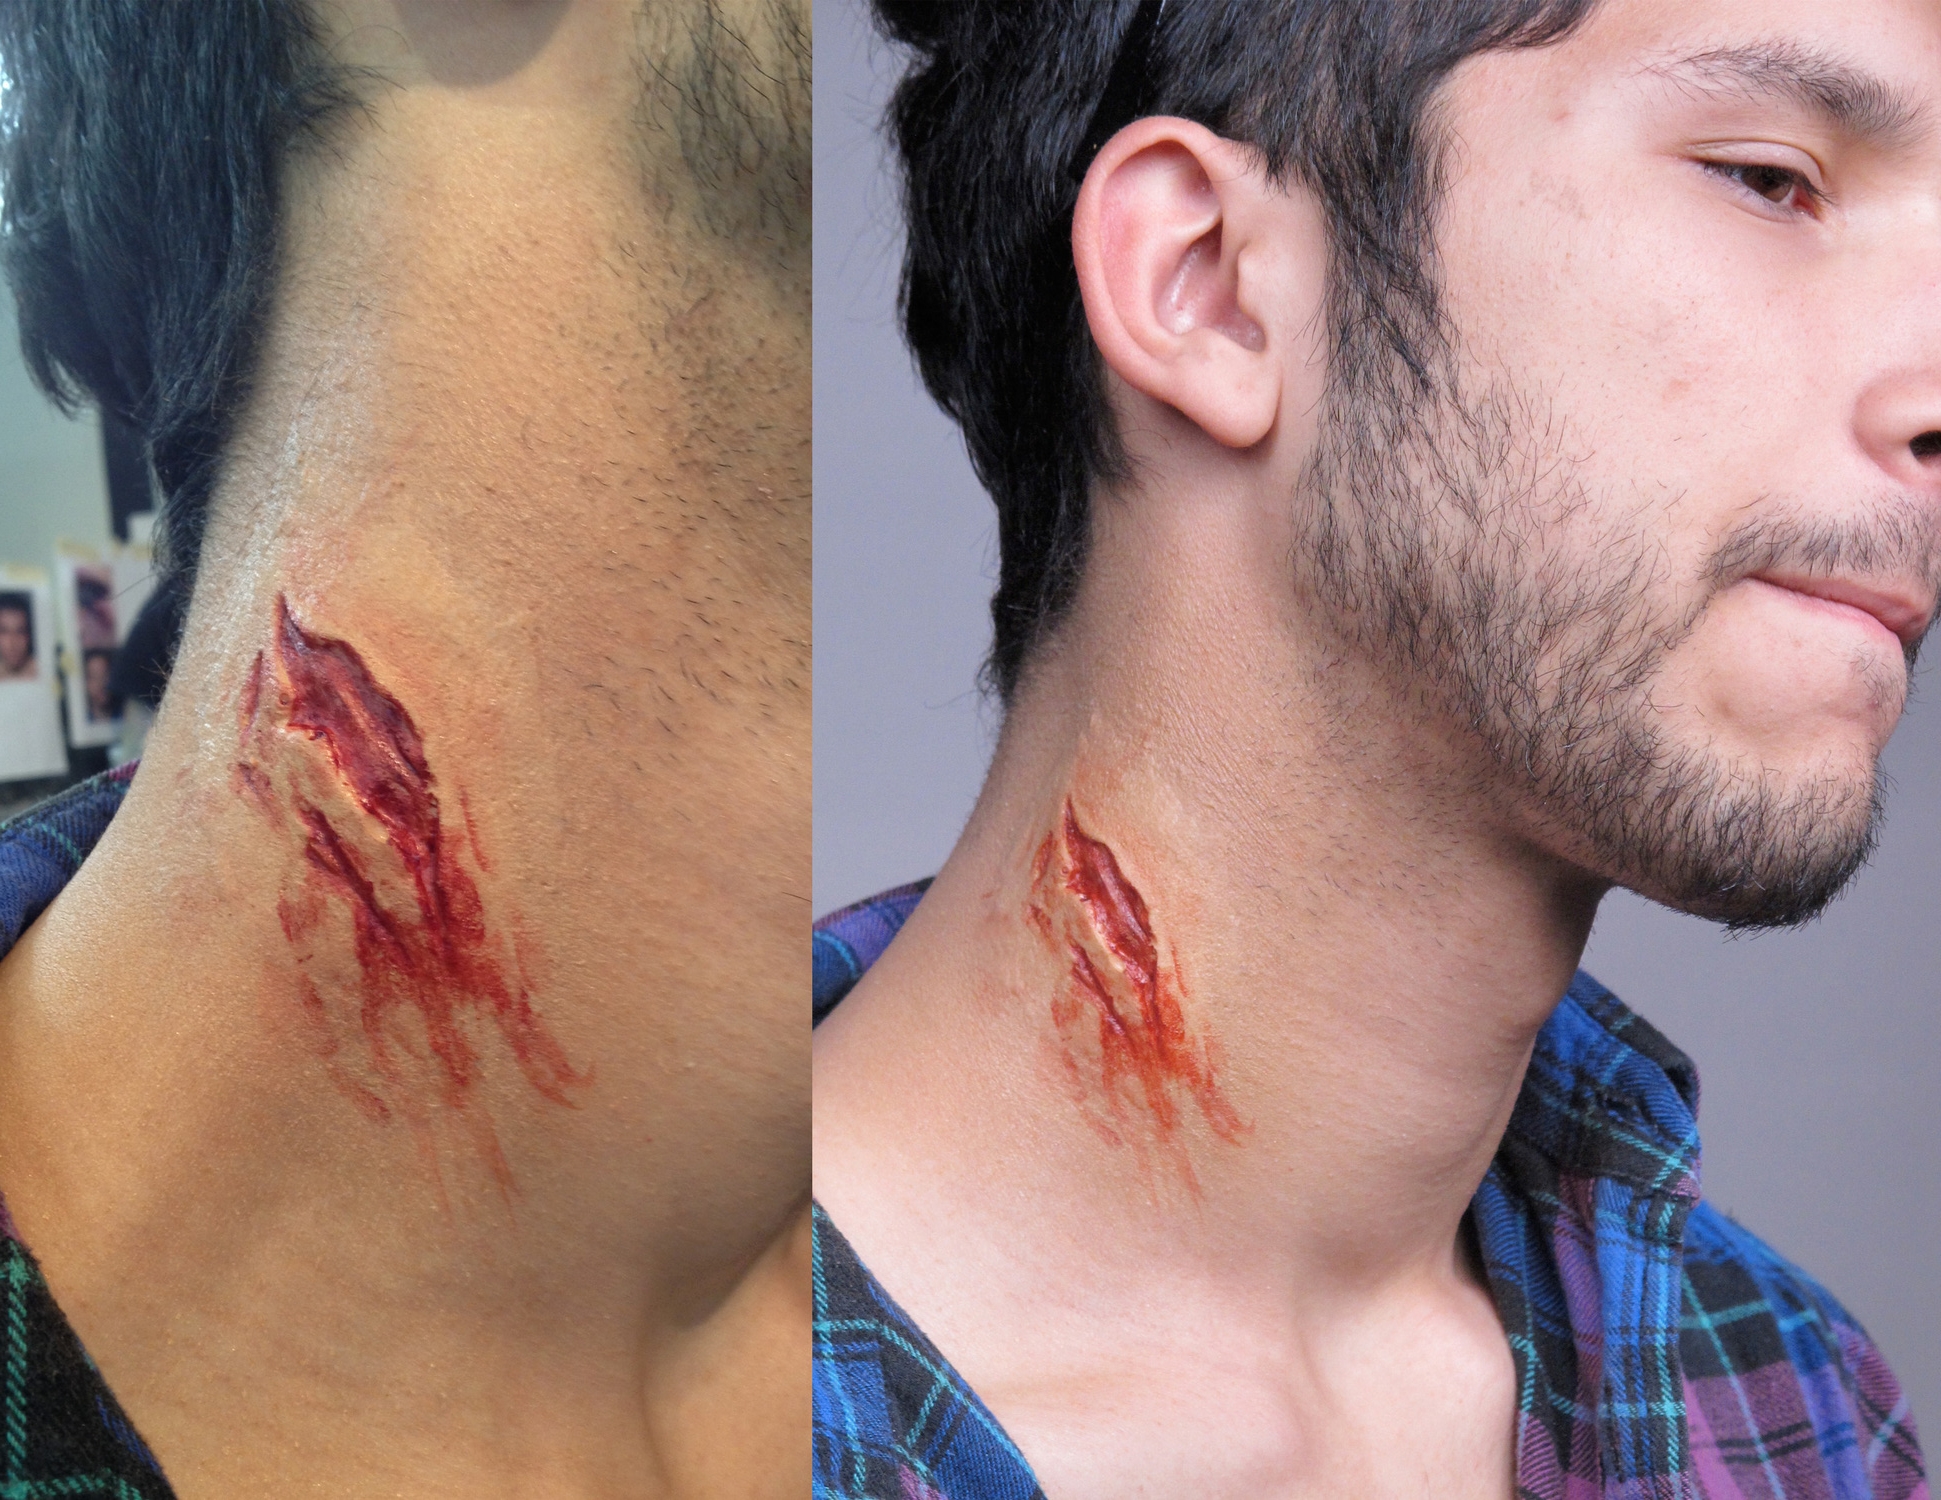 Gelatin neck wound